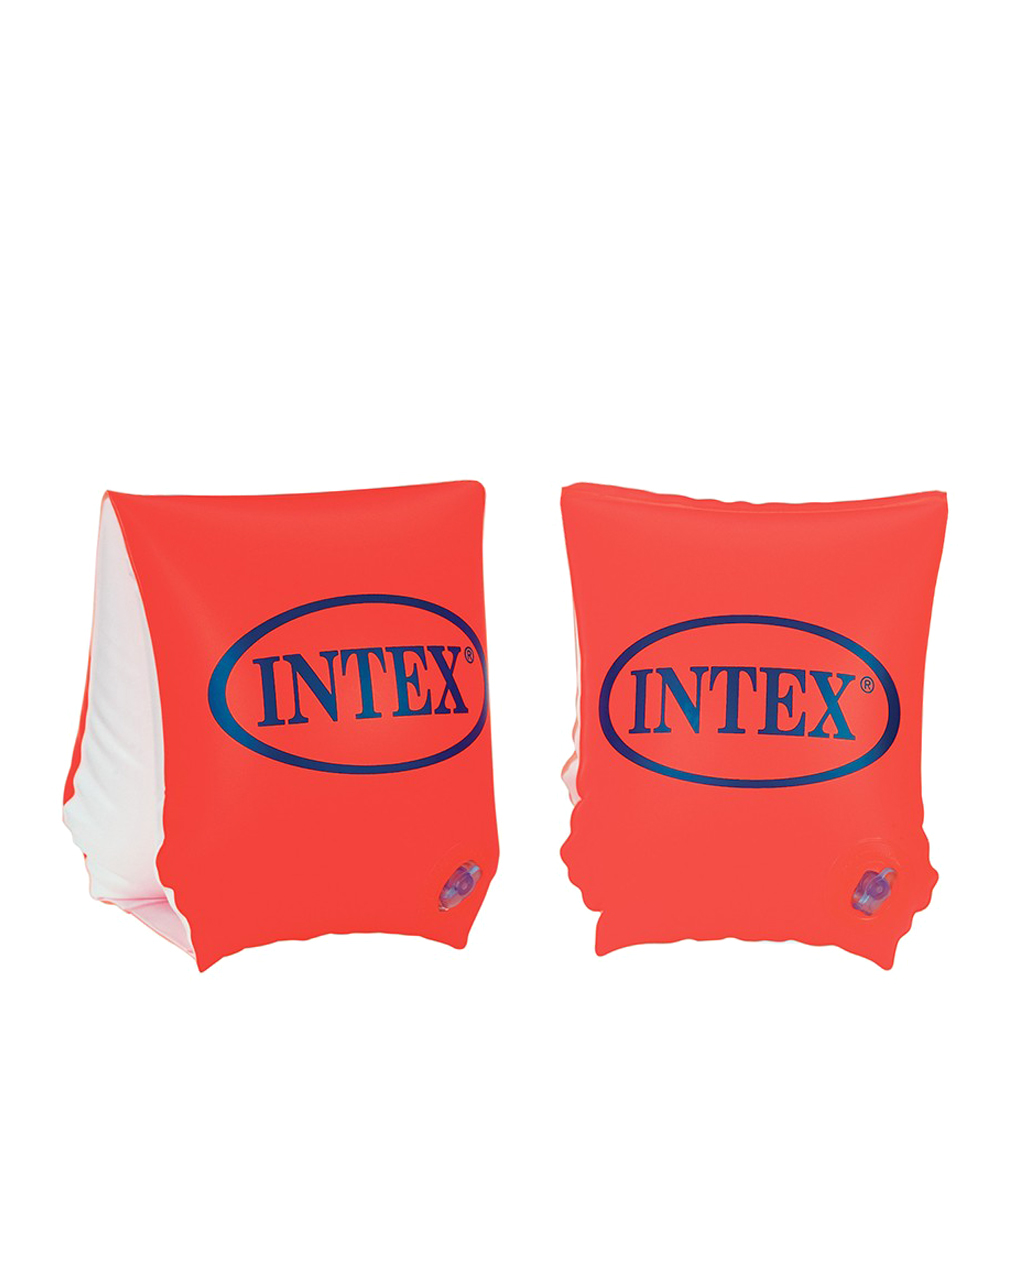 Intex μπρατσάκια κόκκινα 30x15 cm - Intex